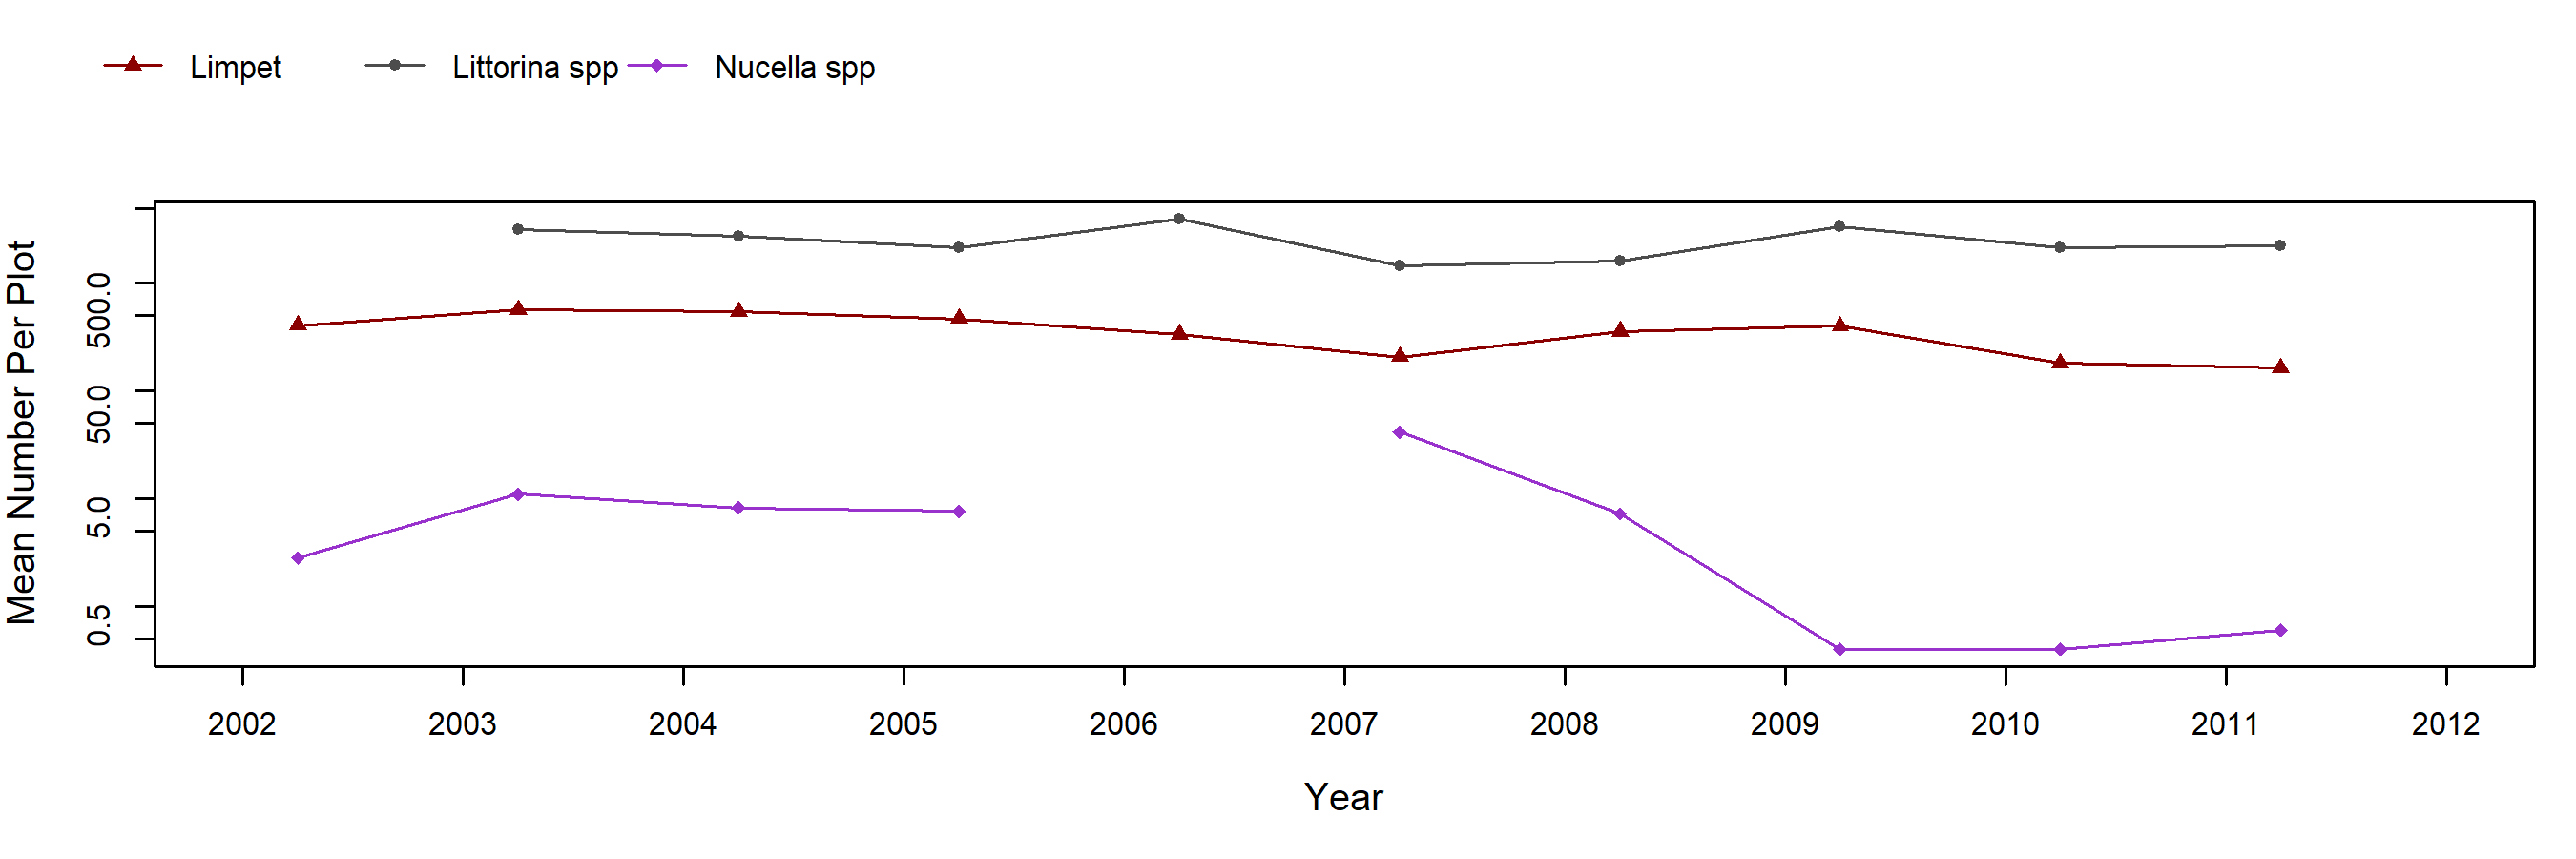 Burnt Hill Pelvetiopsis trend plot